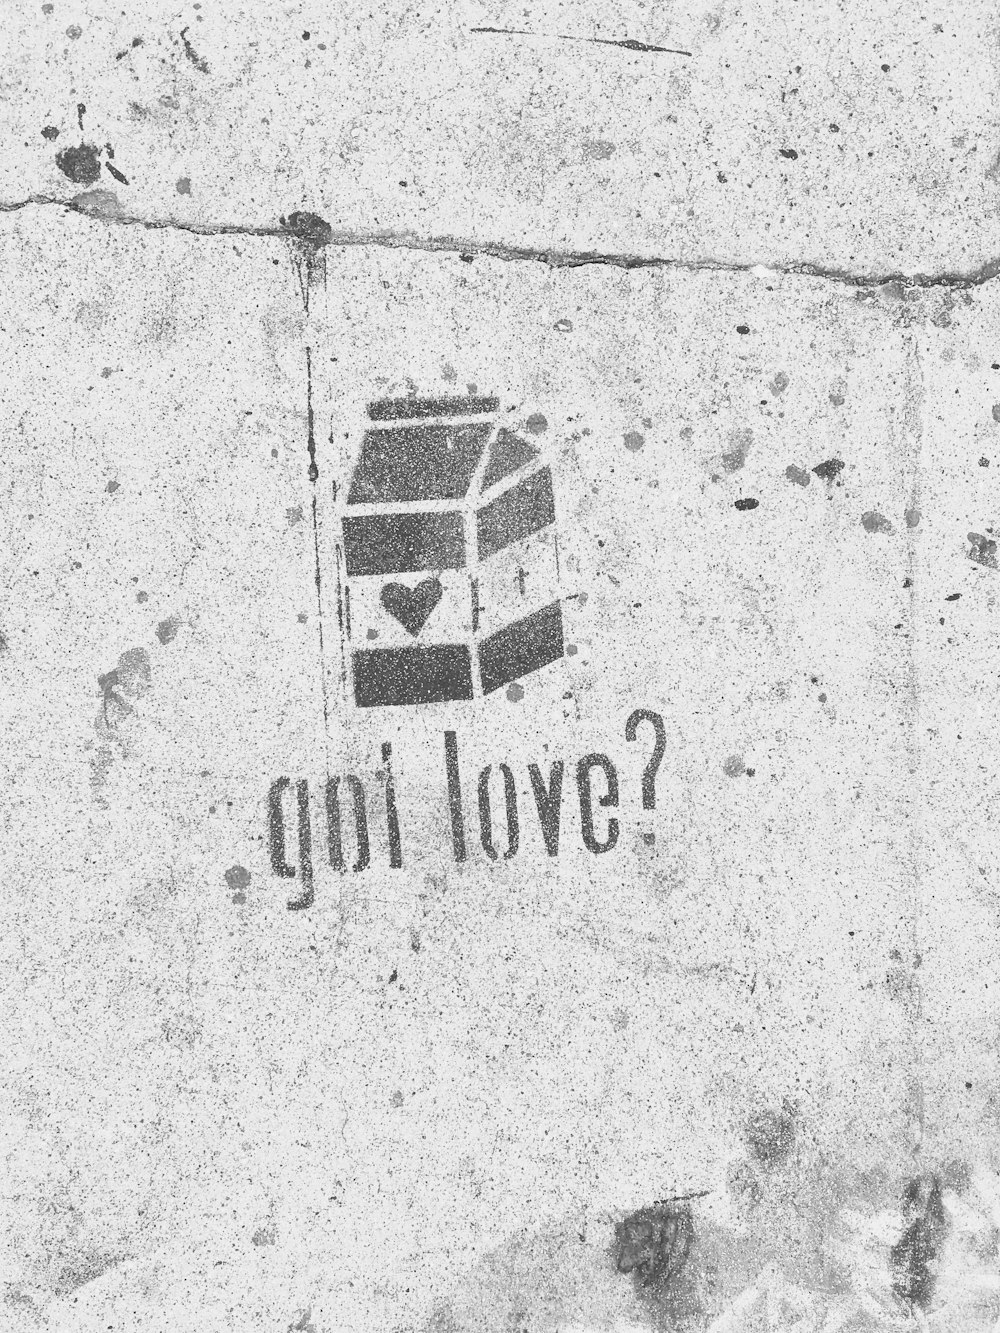 Vous avez de l’amour ? avec un graffiti de carton de lait sur un mur en béton